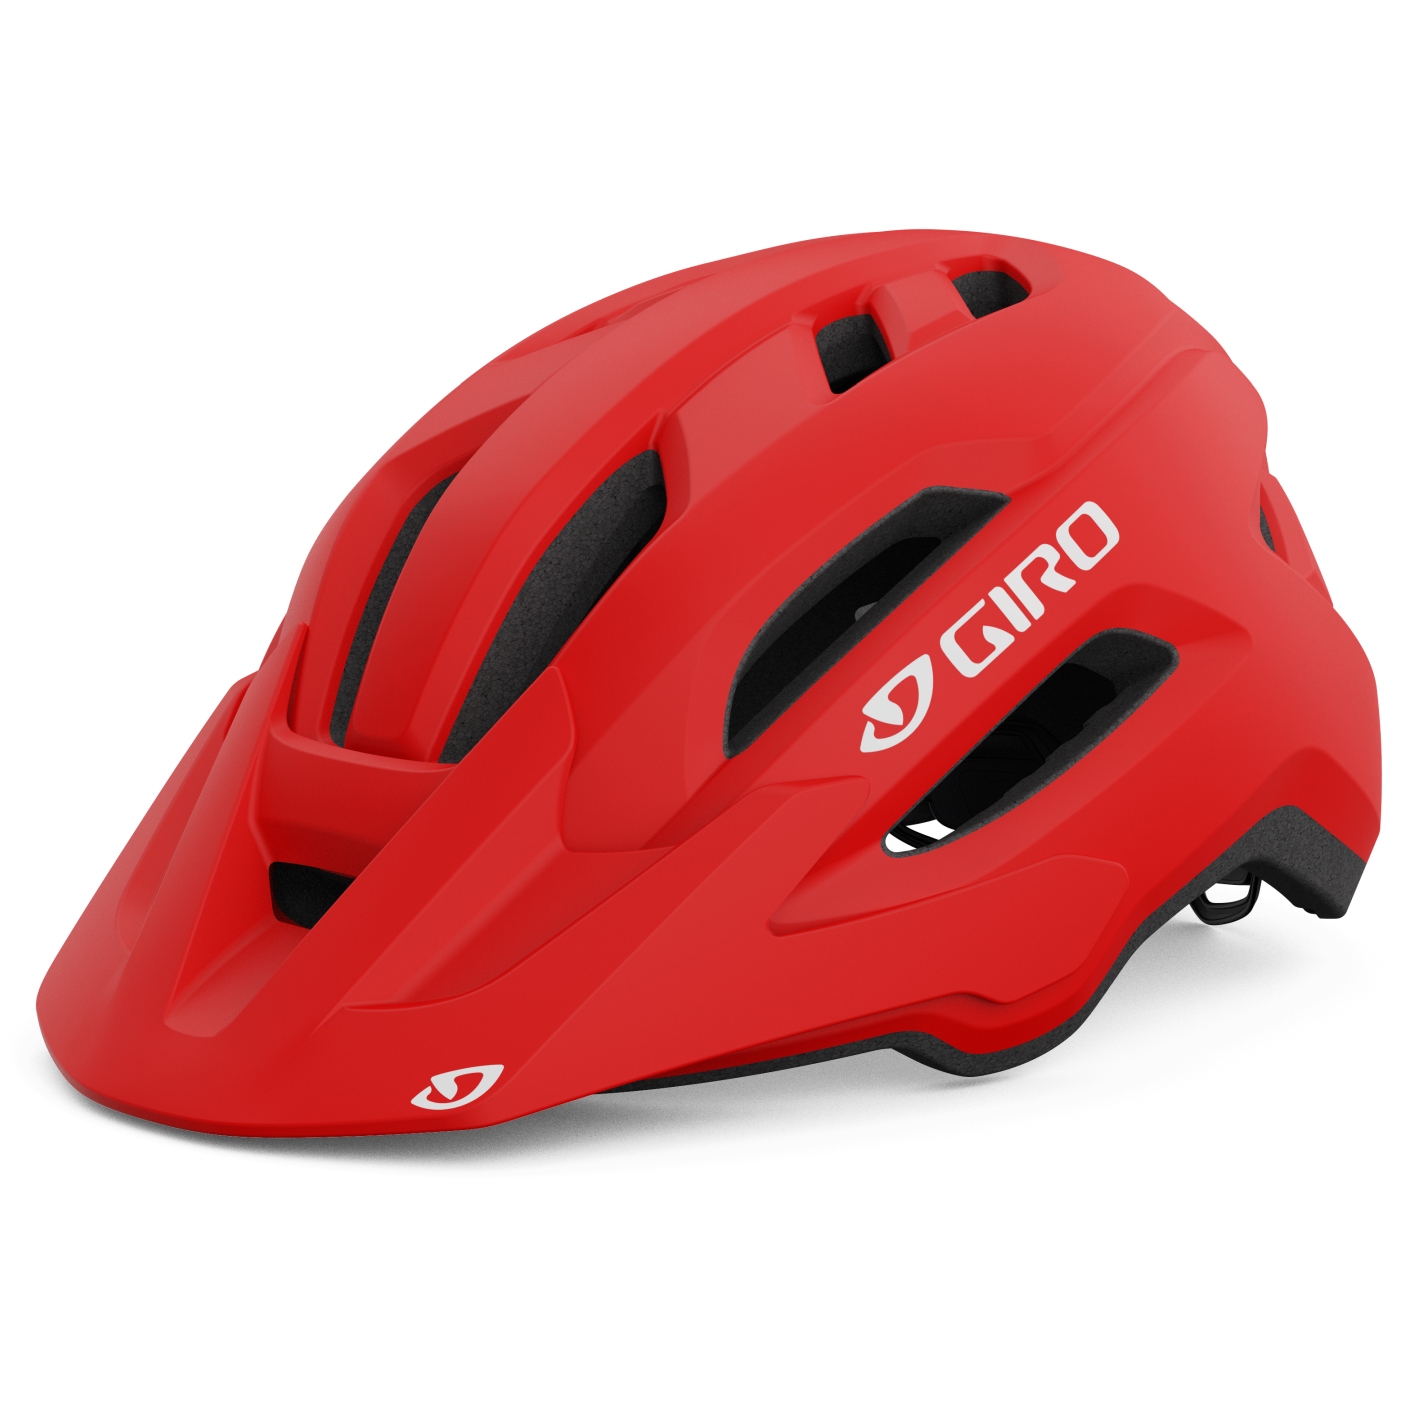 Productfoto van Giro Fixture II Helm - matte trim red